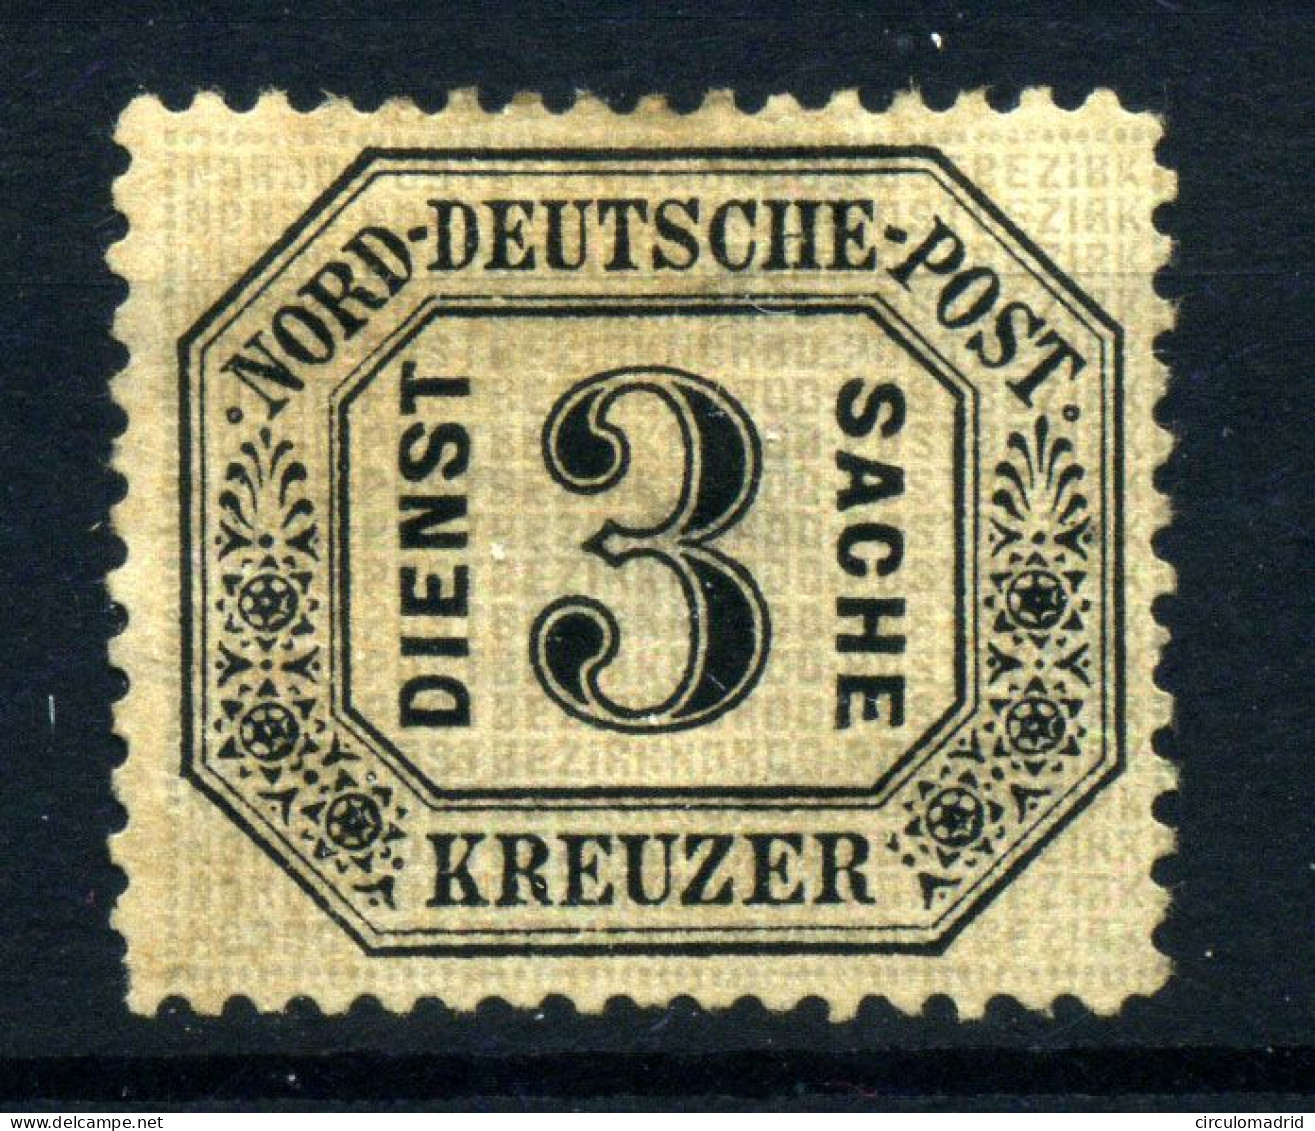 Conf. De Alemania Del Norte (Servicios)  Nº 8*. Año 1870 - Postfris